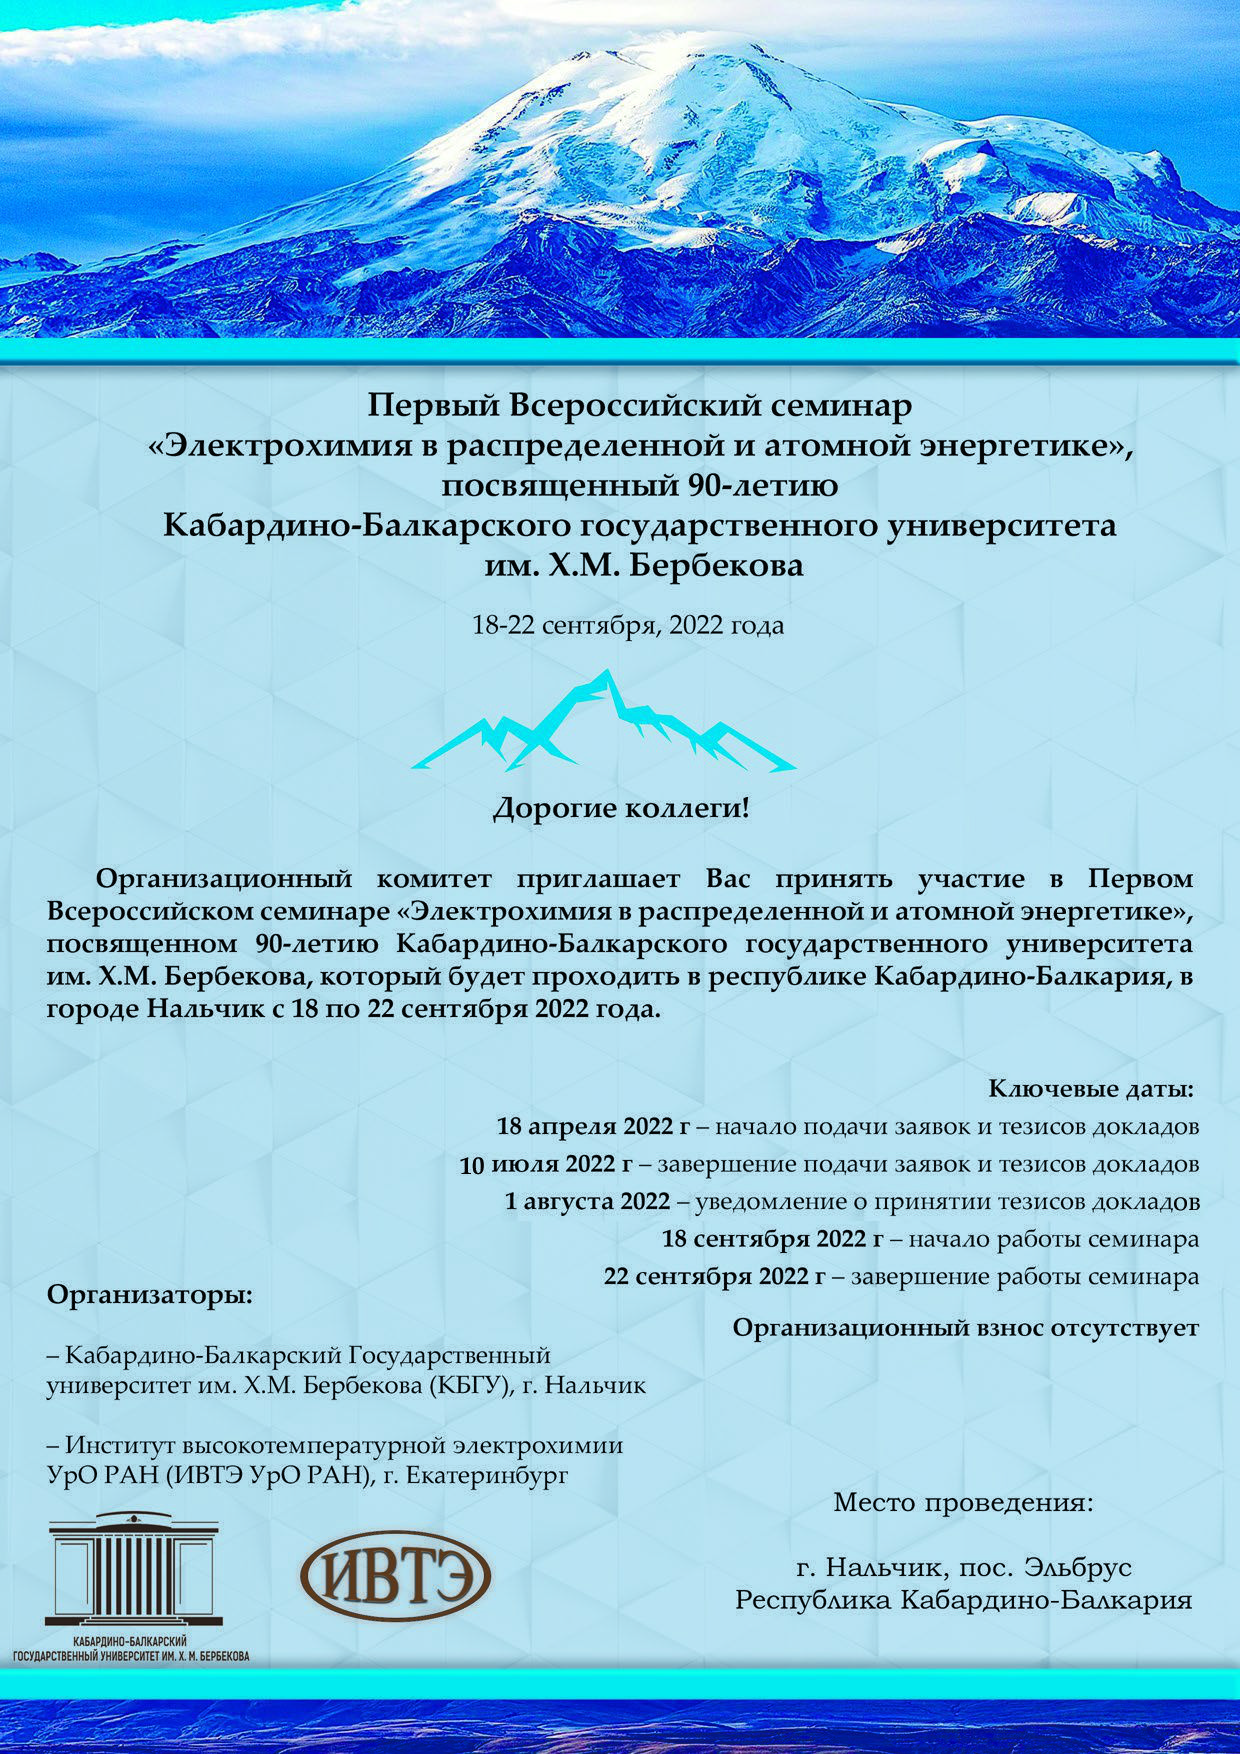 18-22 сентября 2022 года пройдет Первый Всероссийский семинар "Электрохимия в распределенной и атомной энергетике"